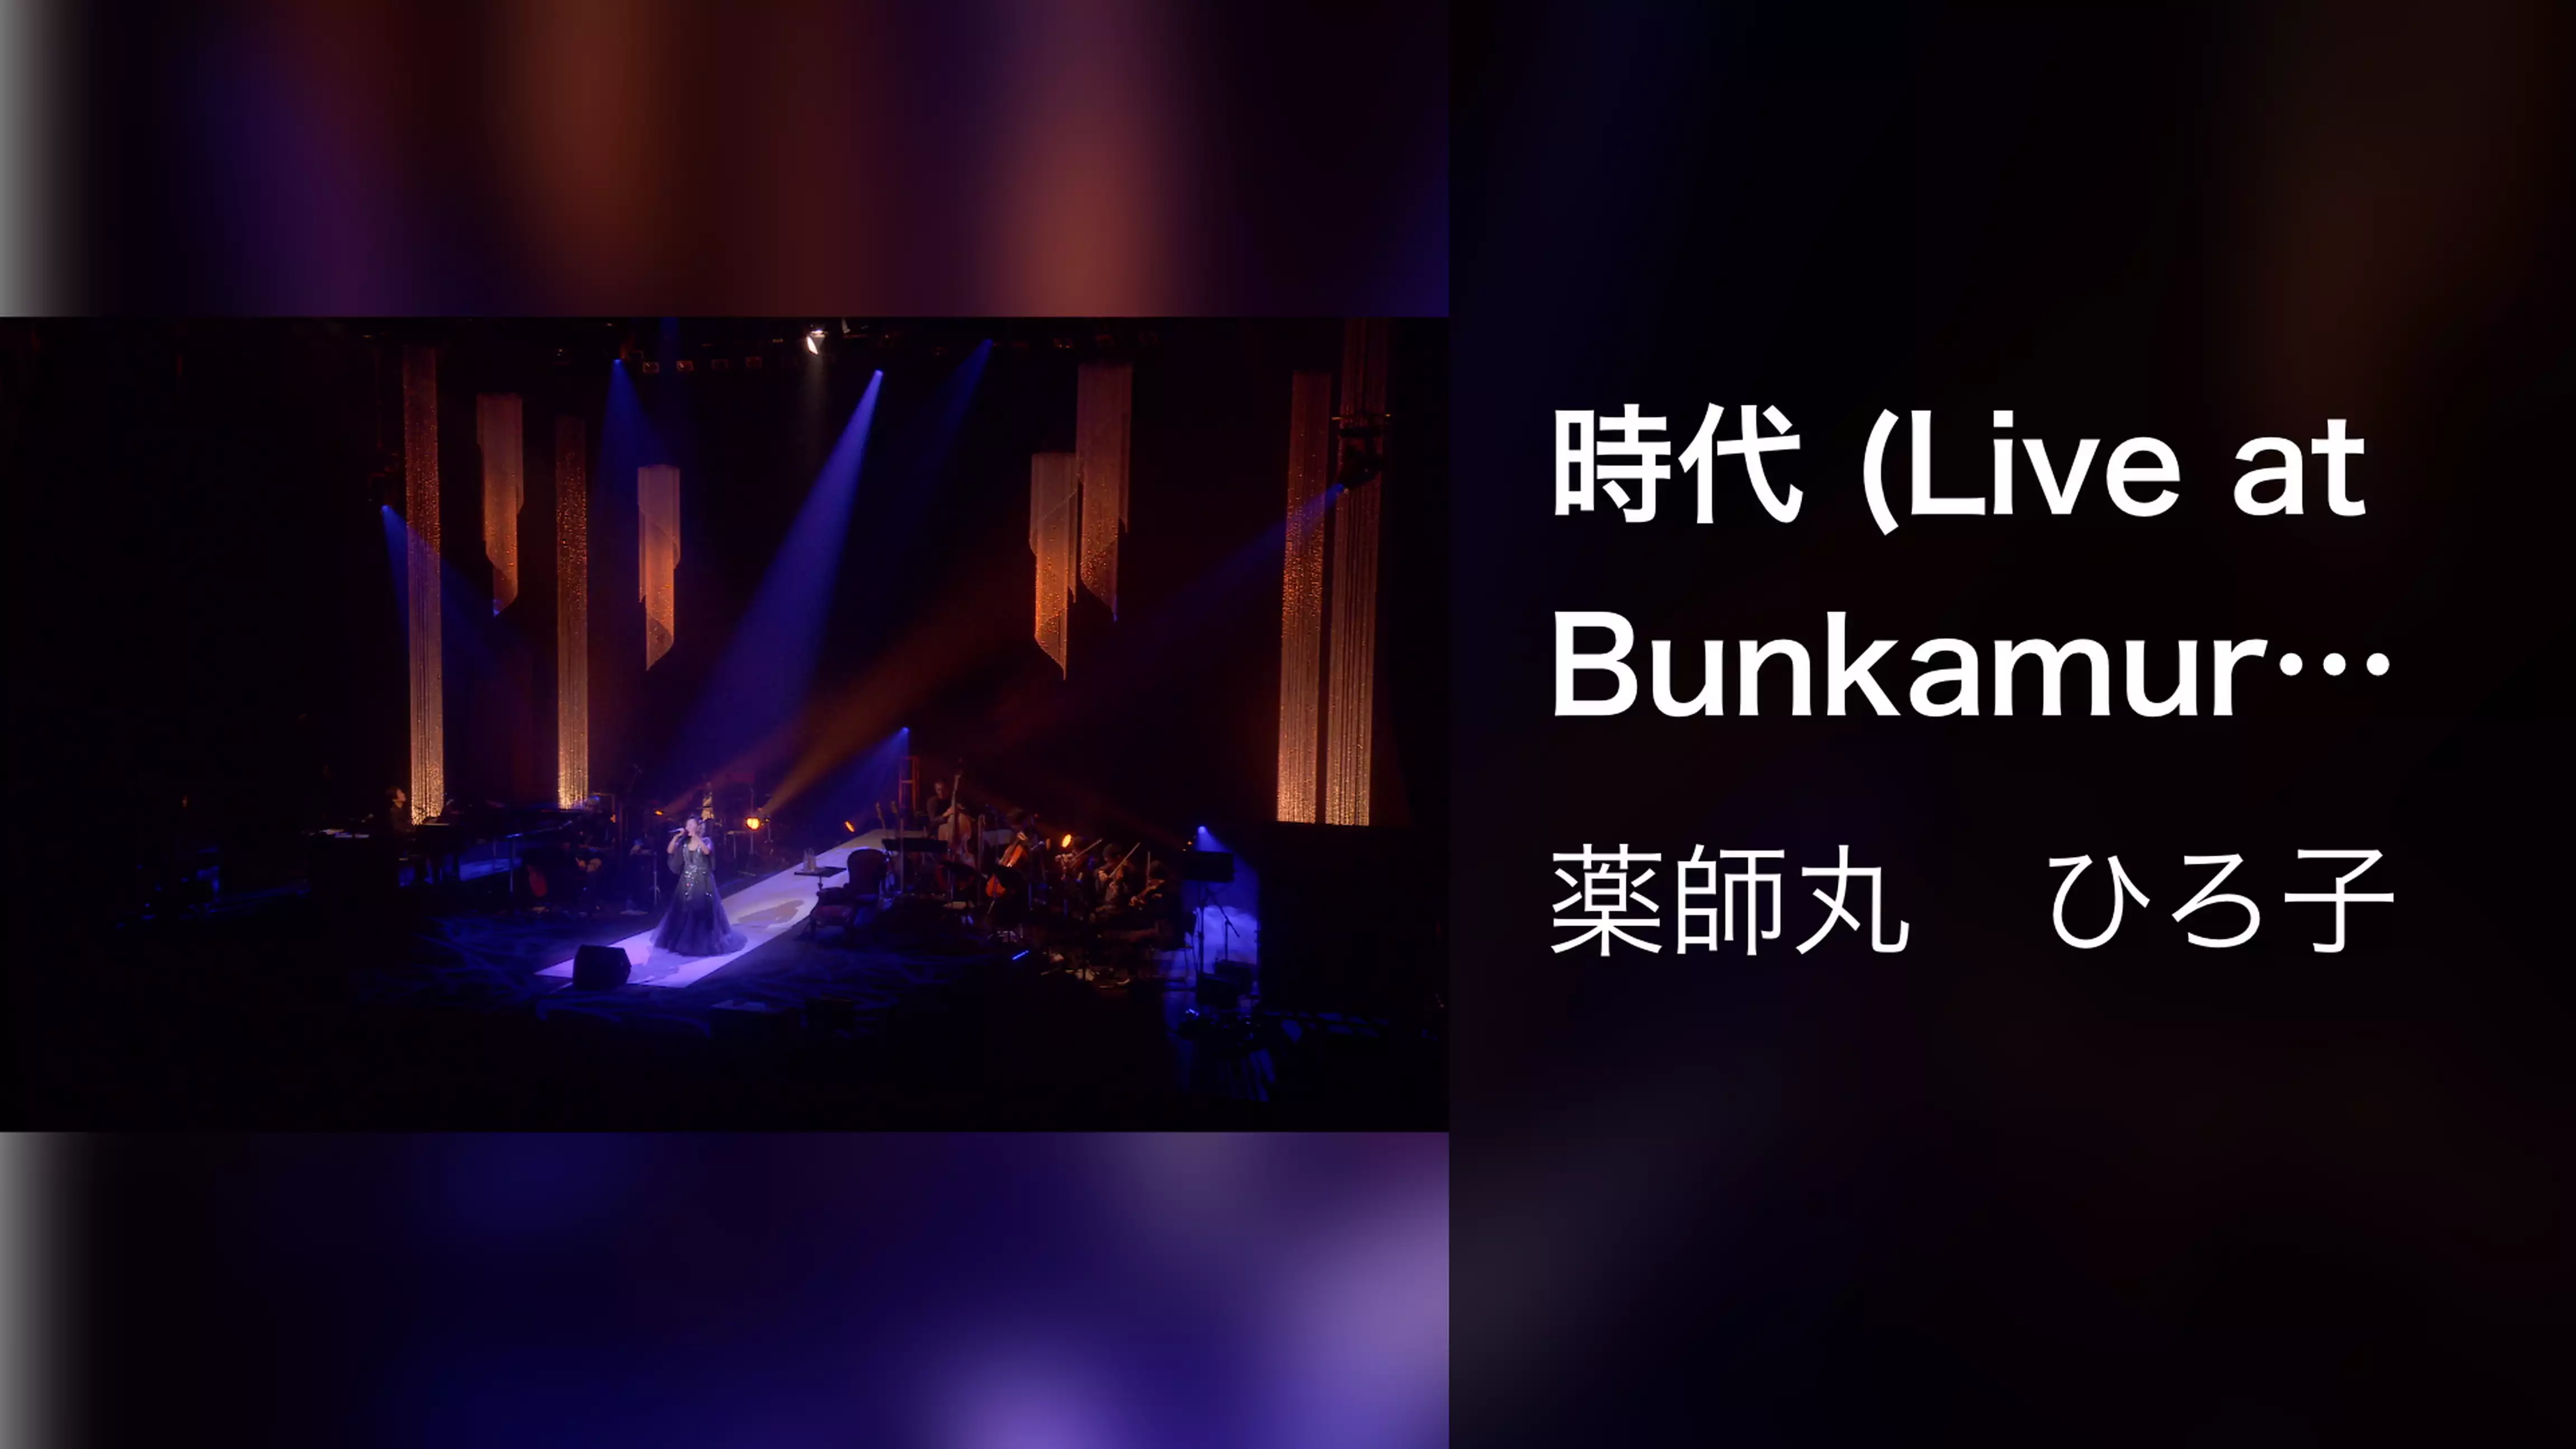 時代 (Live at Bunkamura Orchard Hall on February 16, 2018)